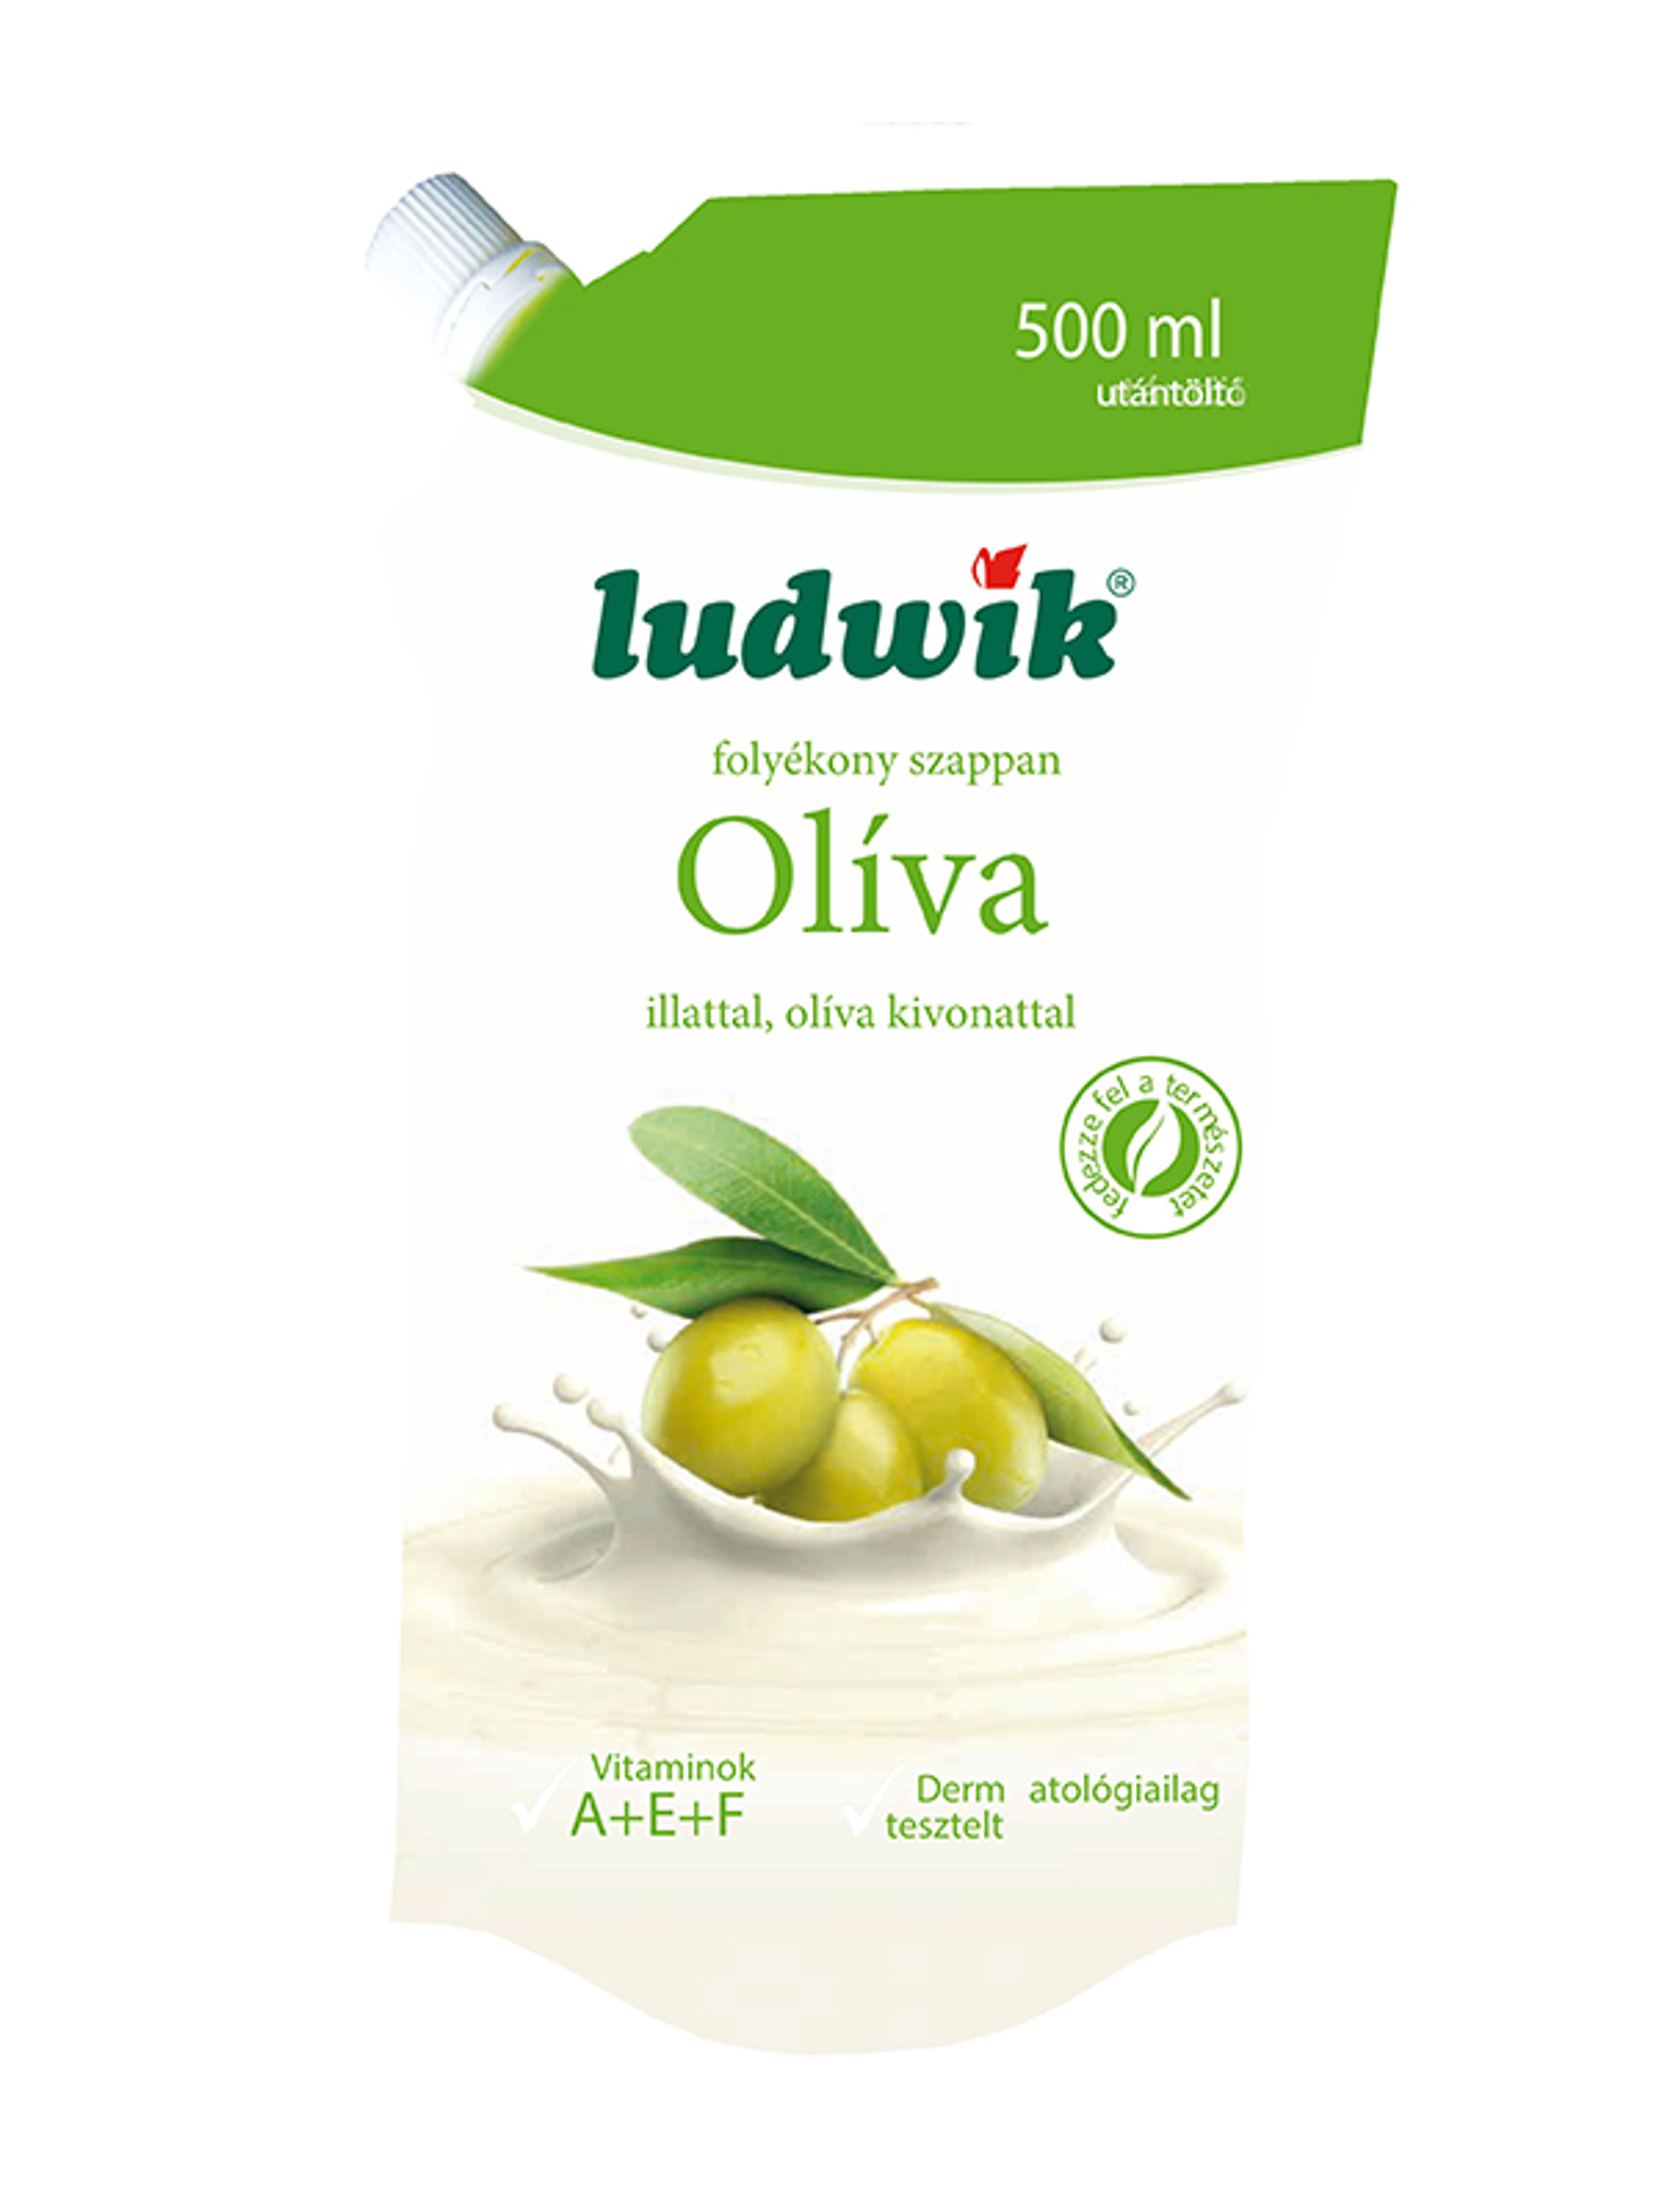 Ludwik folyékony szappan utántöltő oliva - 500 ml